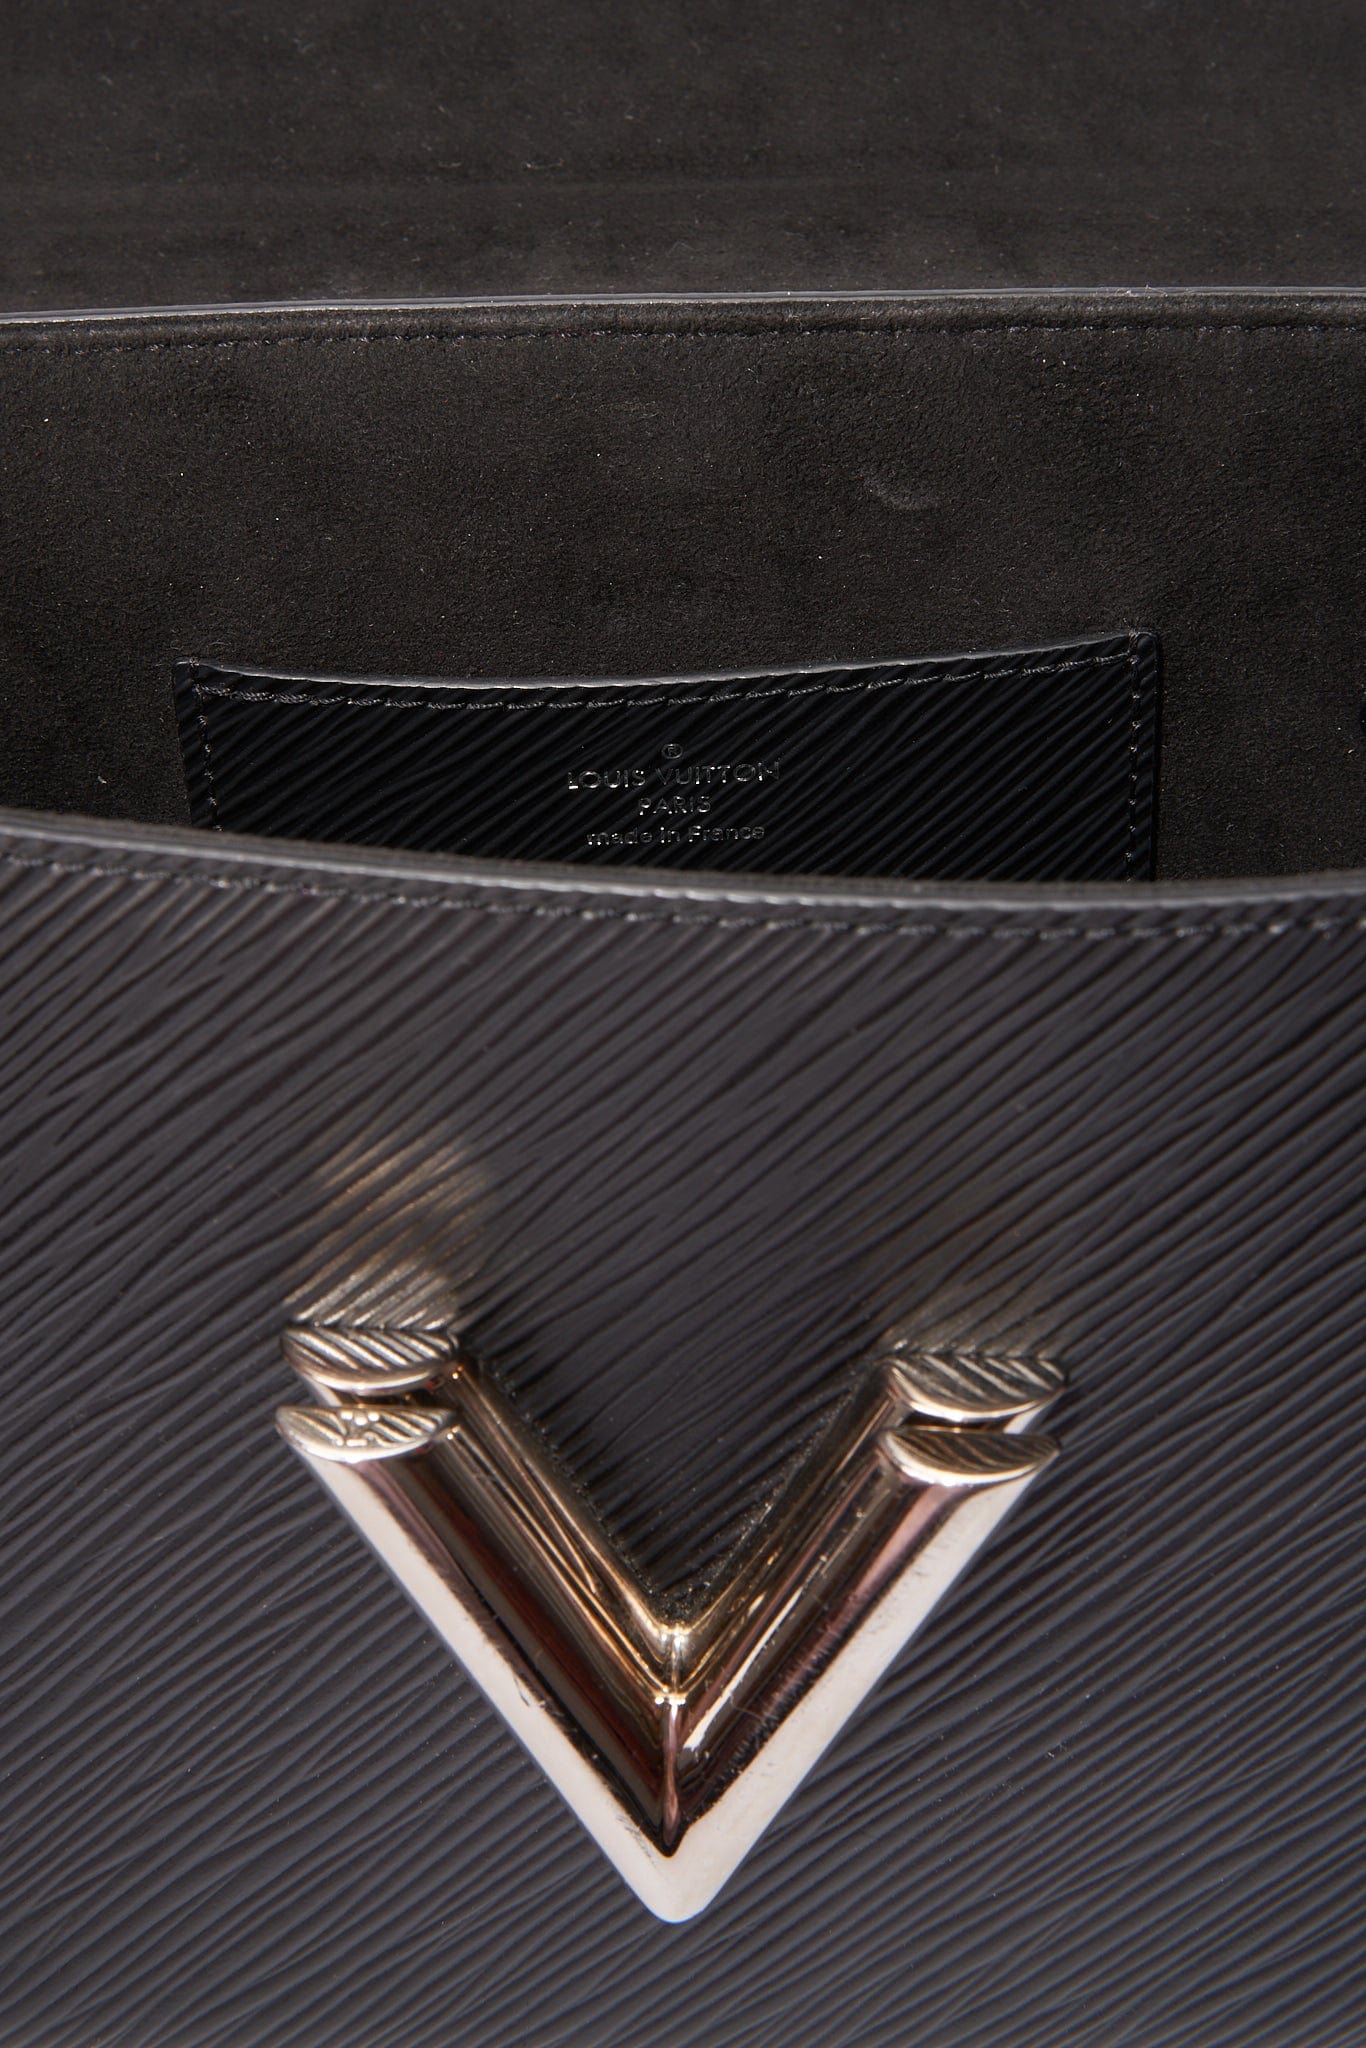 Louis Vuitton Epi Leather Twist MM Chain Bag